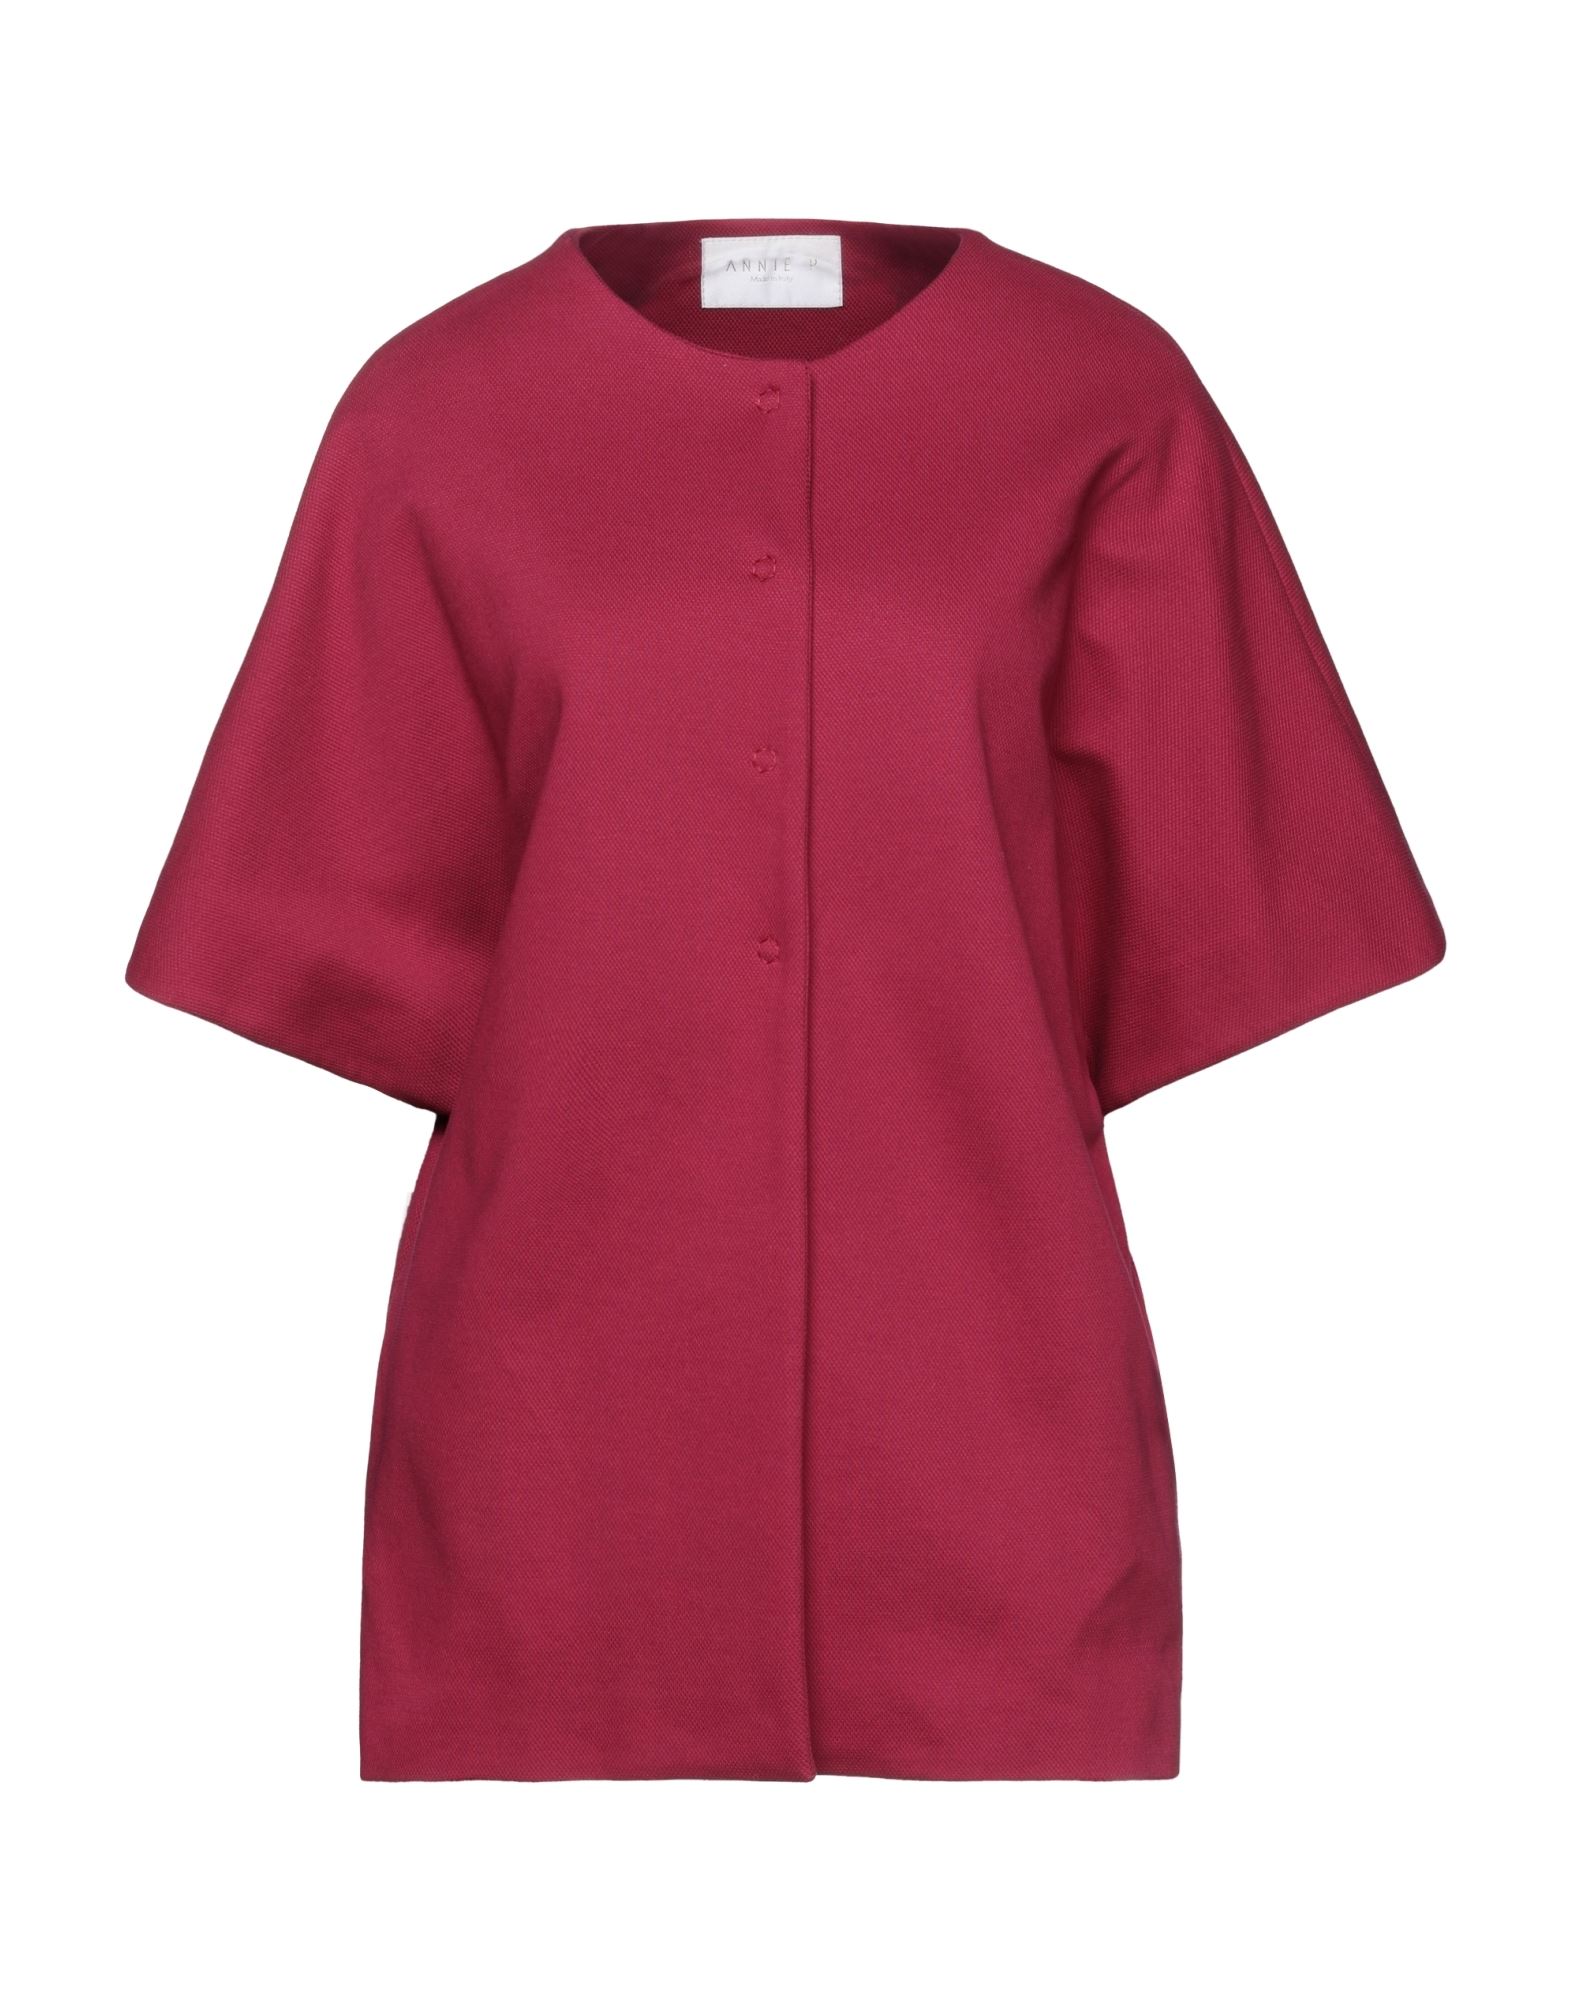 Annie P . Woman Overcoat Garnet Size 10 Cotton, Elastane In Red